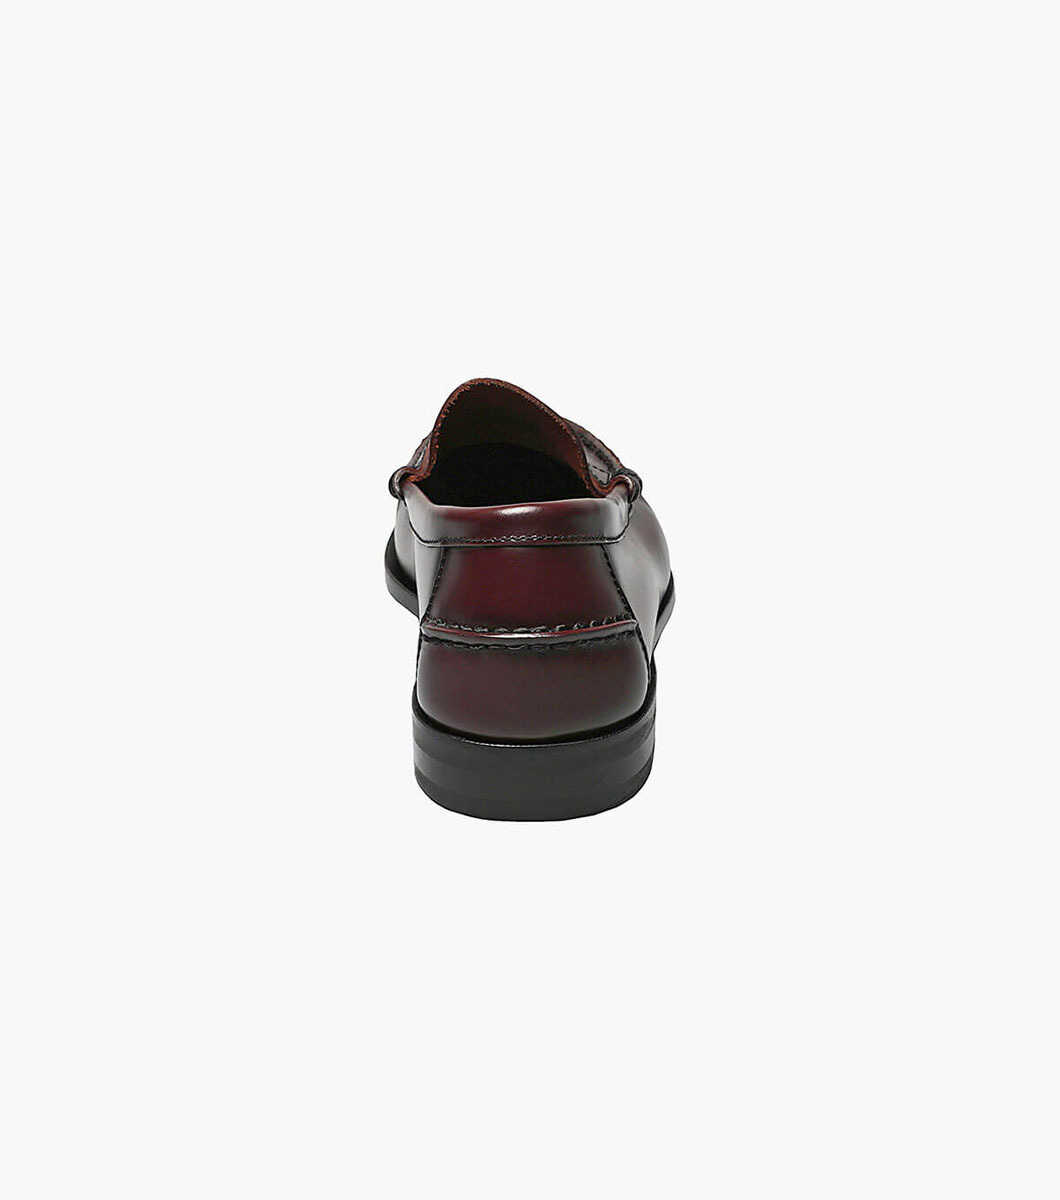 Florsheim Men's Berkley Moc Toe Penny Loafer Shoes Black 17058-01 